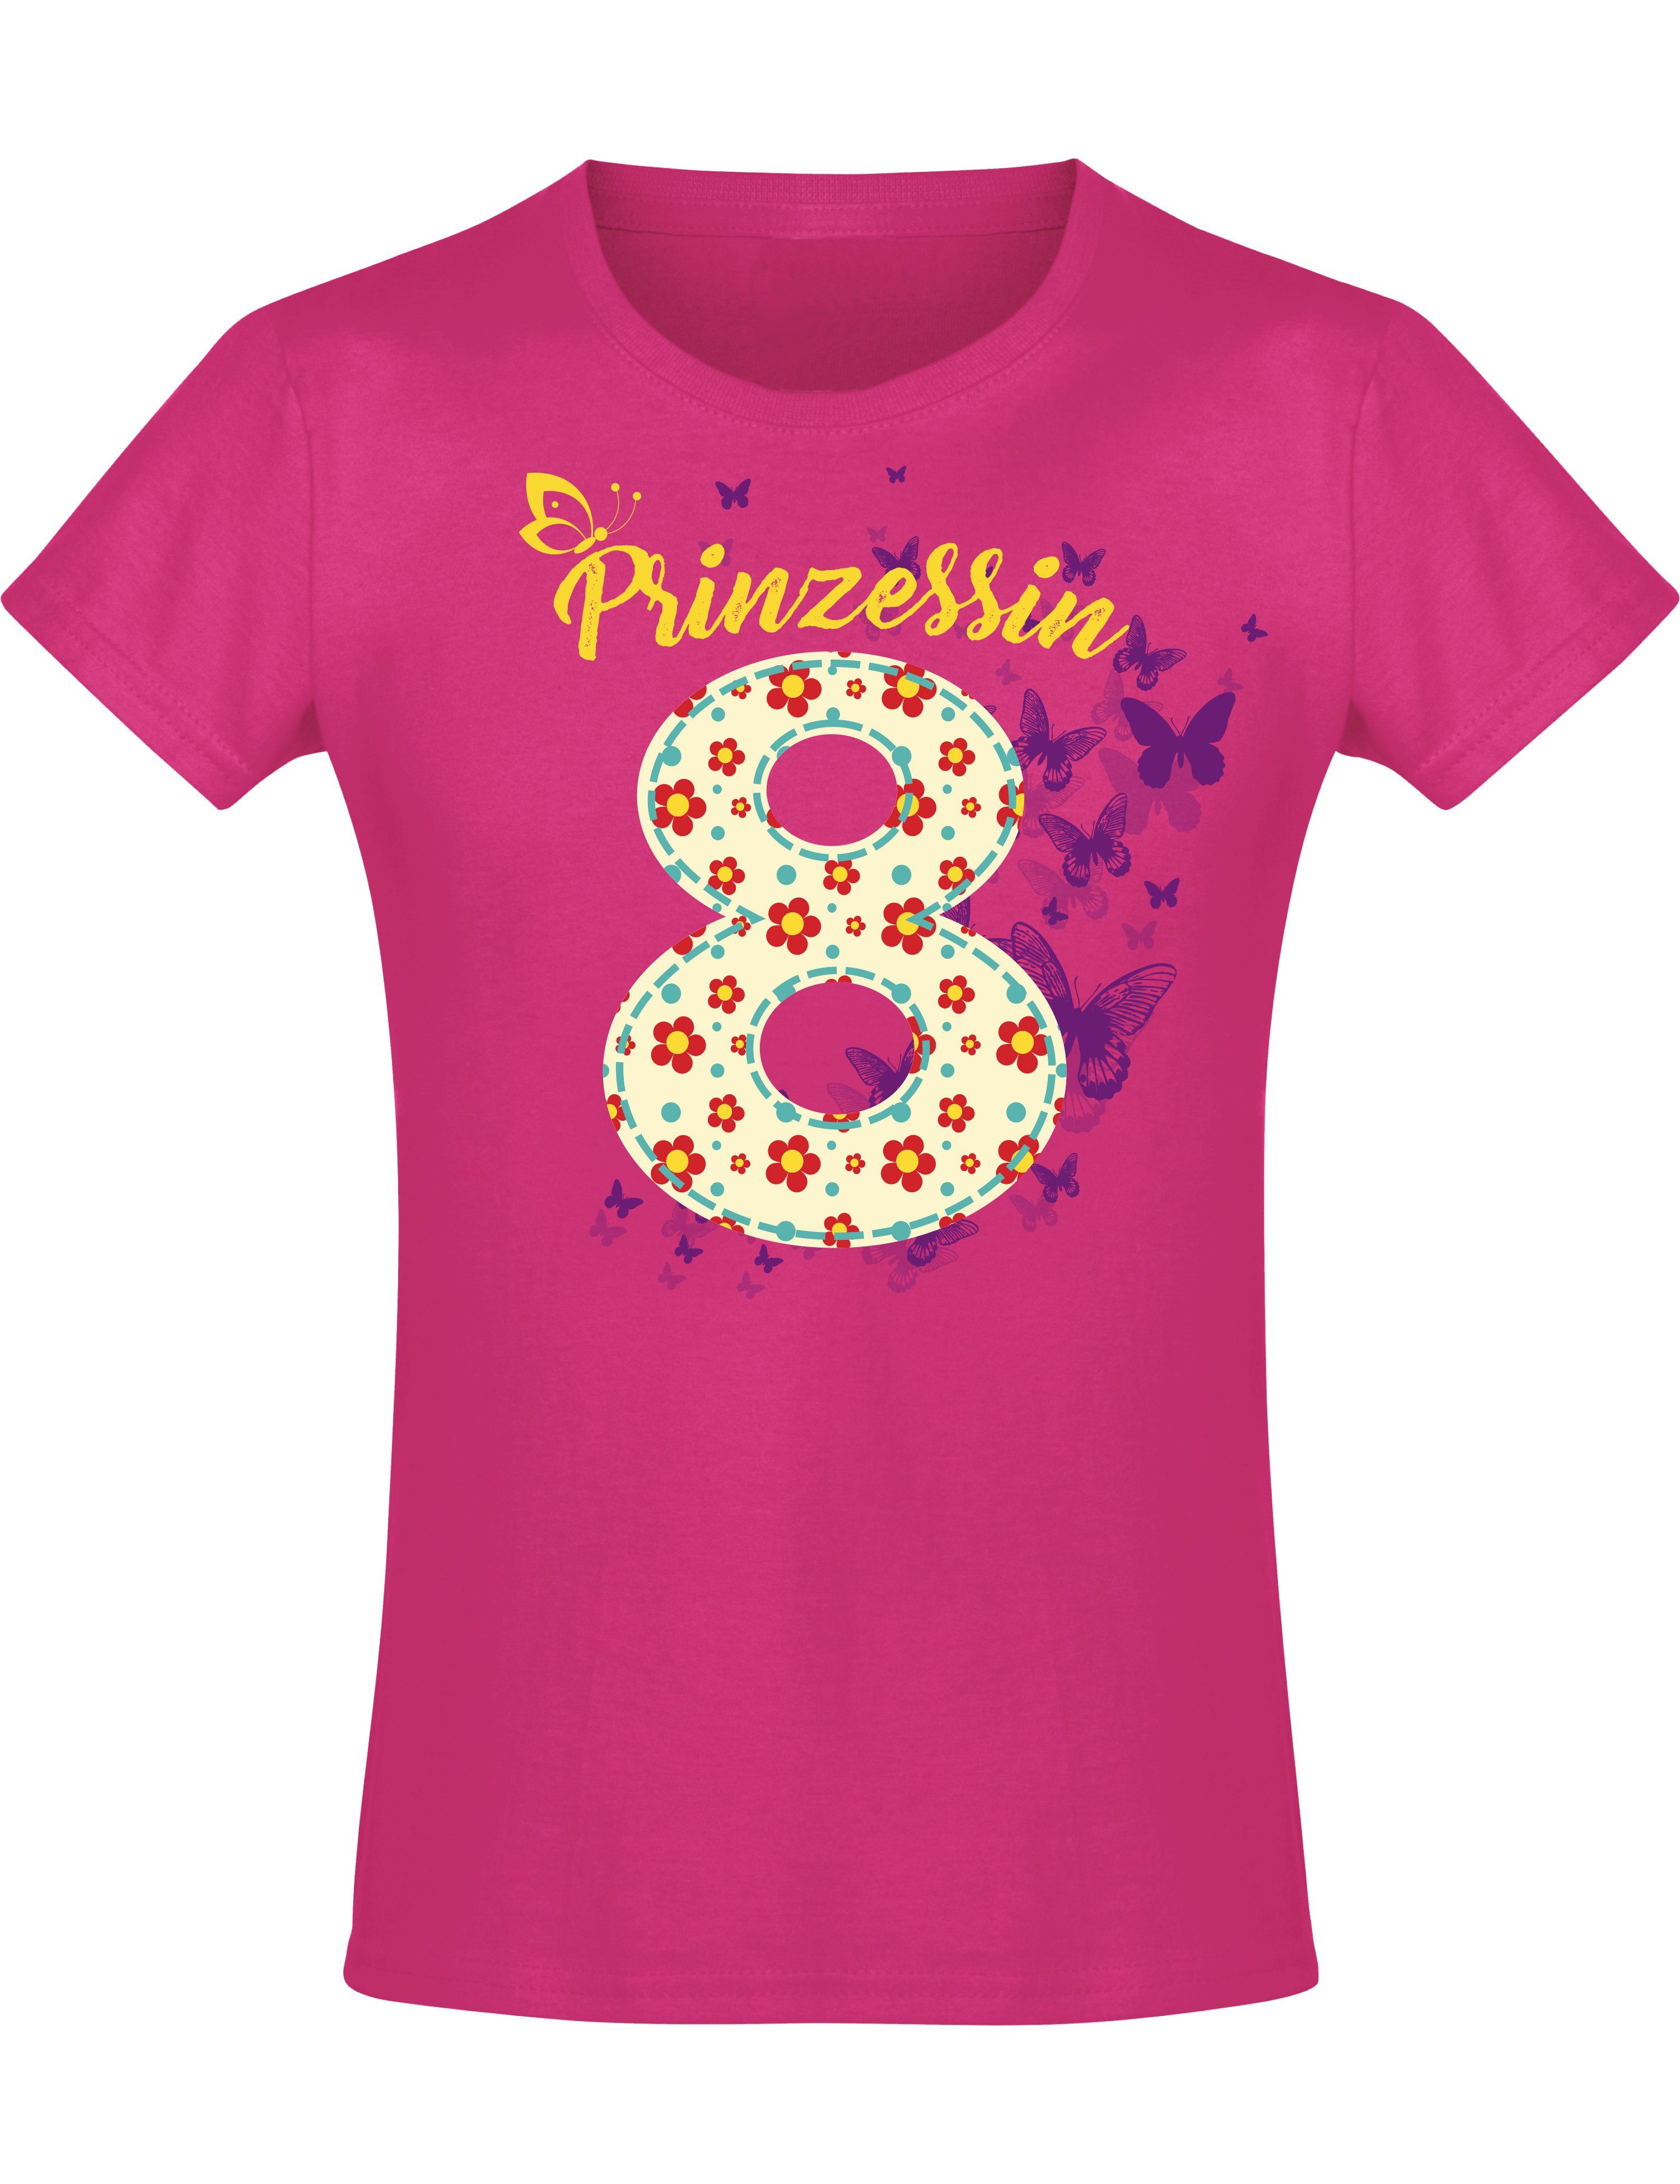 Baddery Print-Shirt Geburstagsgeschenk für Mädchen : 8 Jahre mit Blumen, hochwertiger Siebdruck, aus Baumwolle